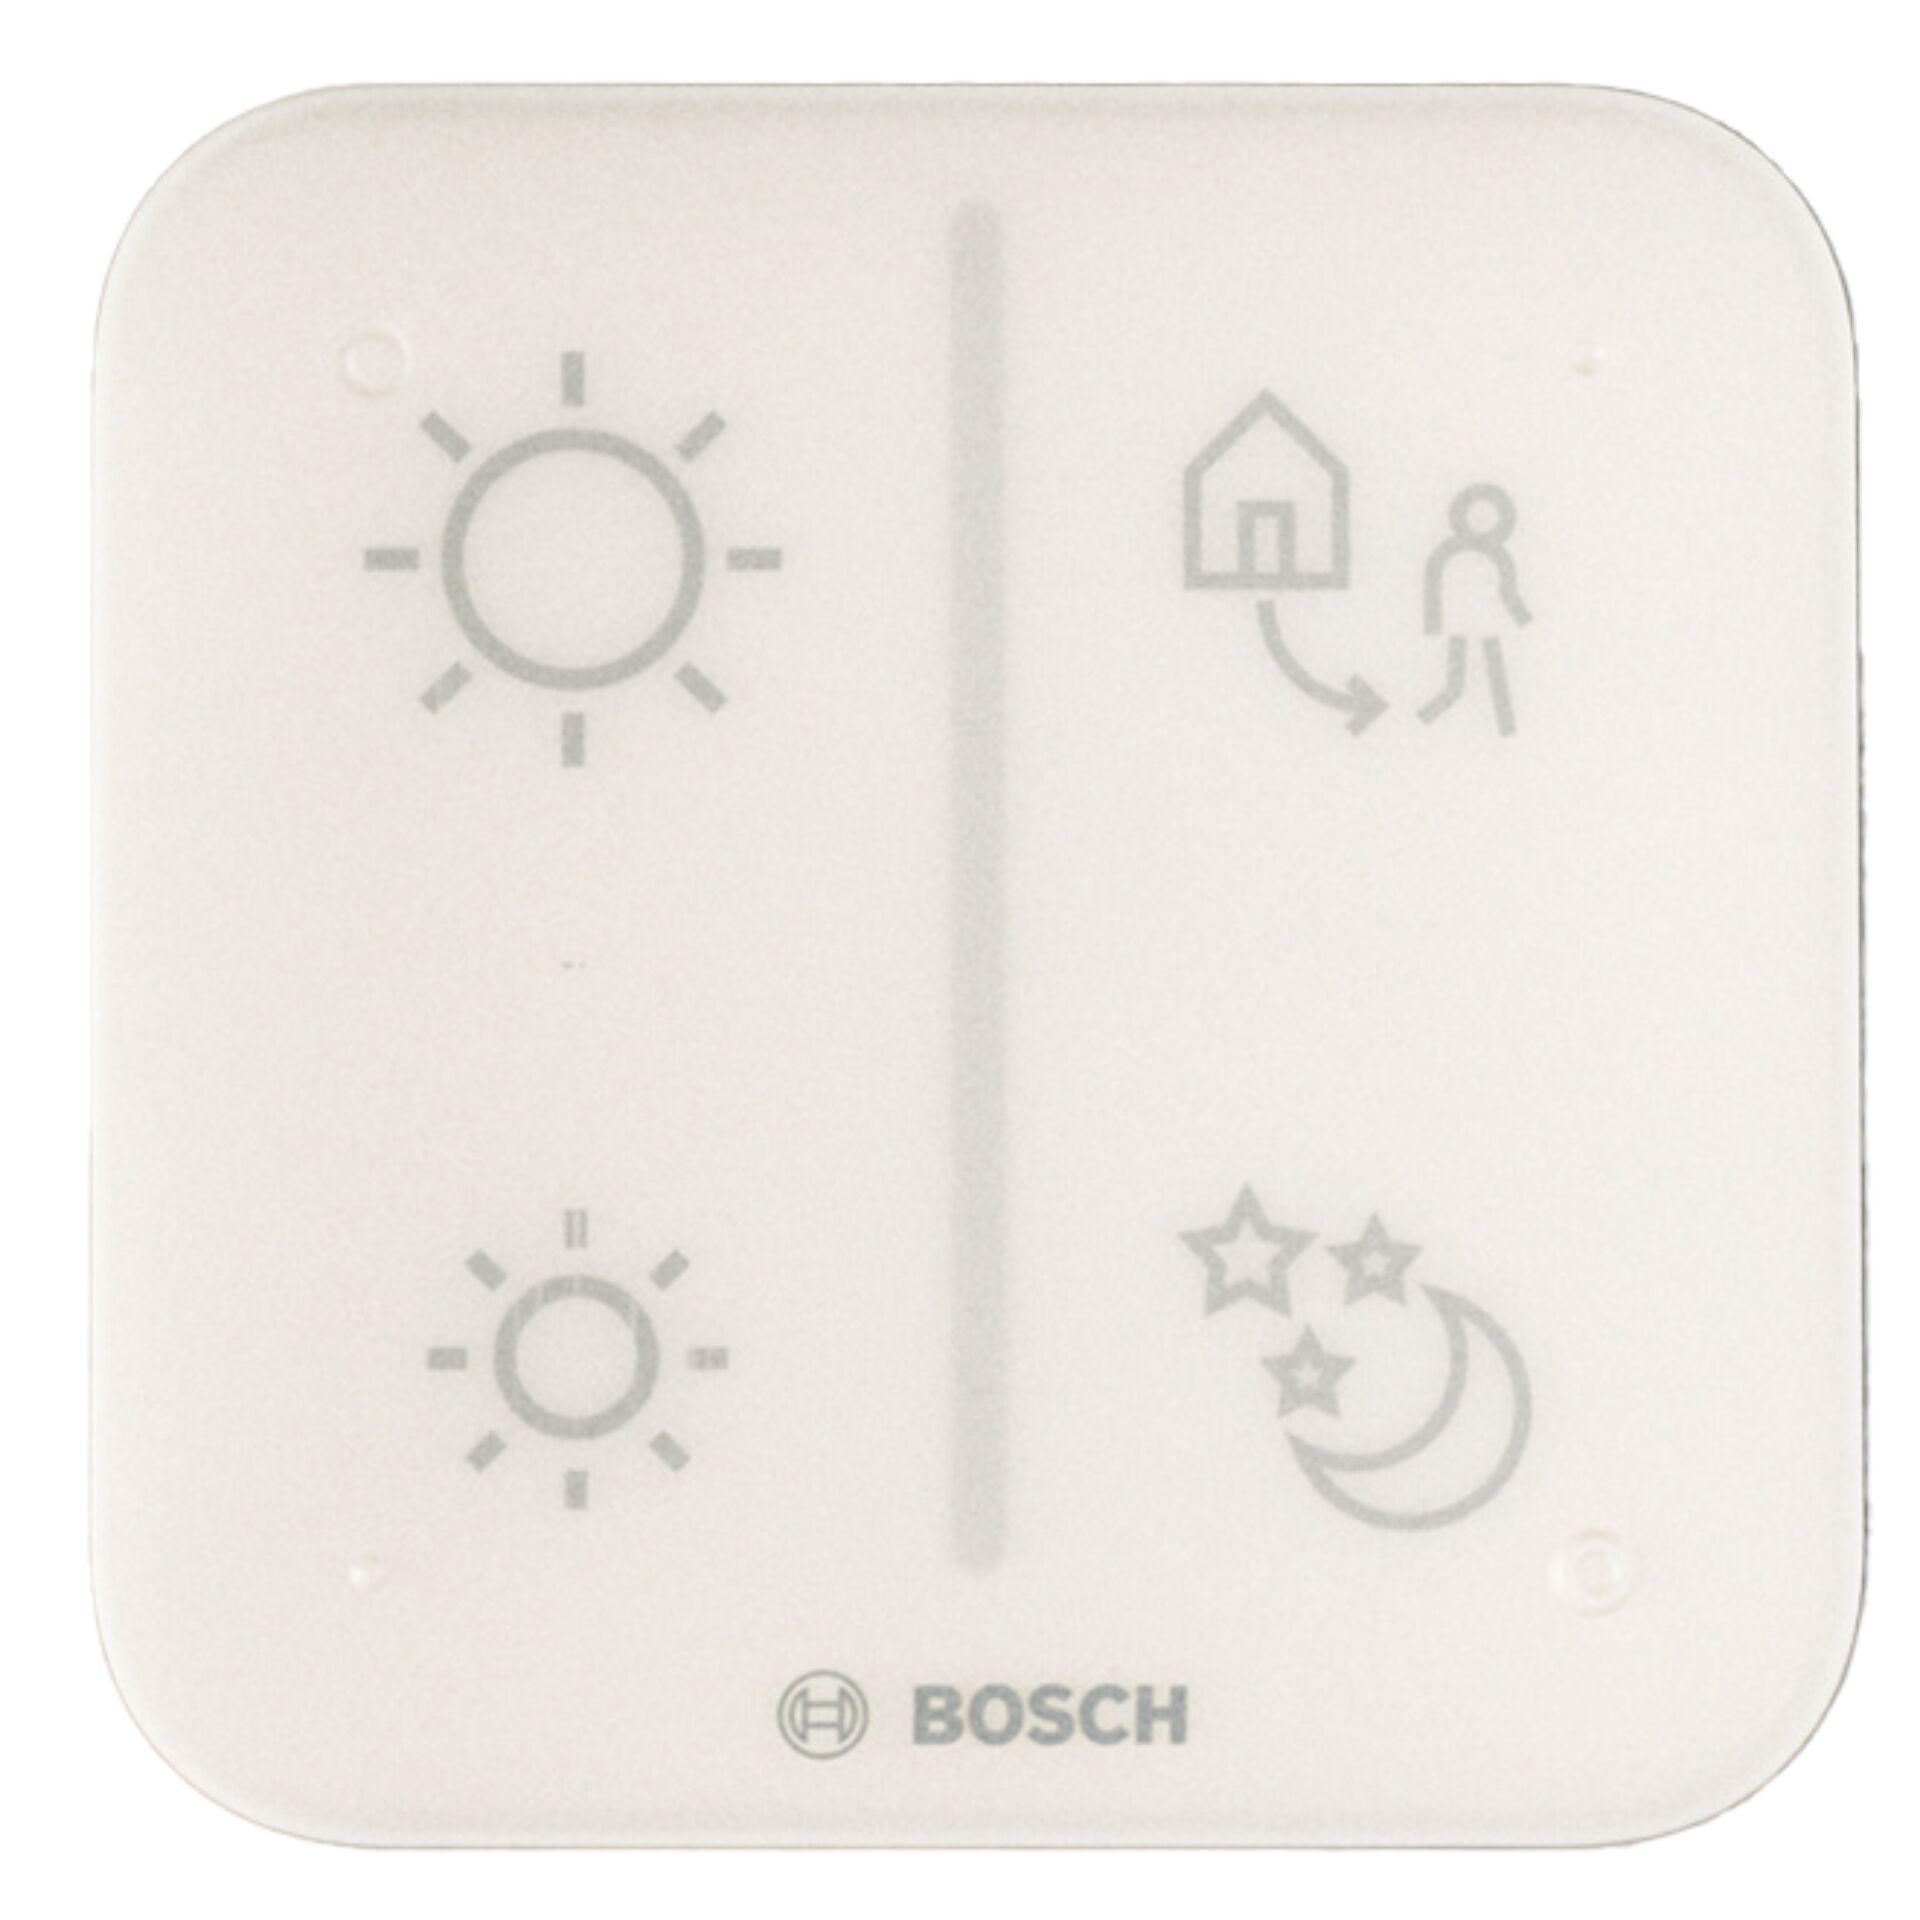 Bosch Smart Home Universalschalter II, Funk-Fernbedienung